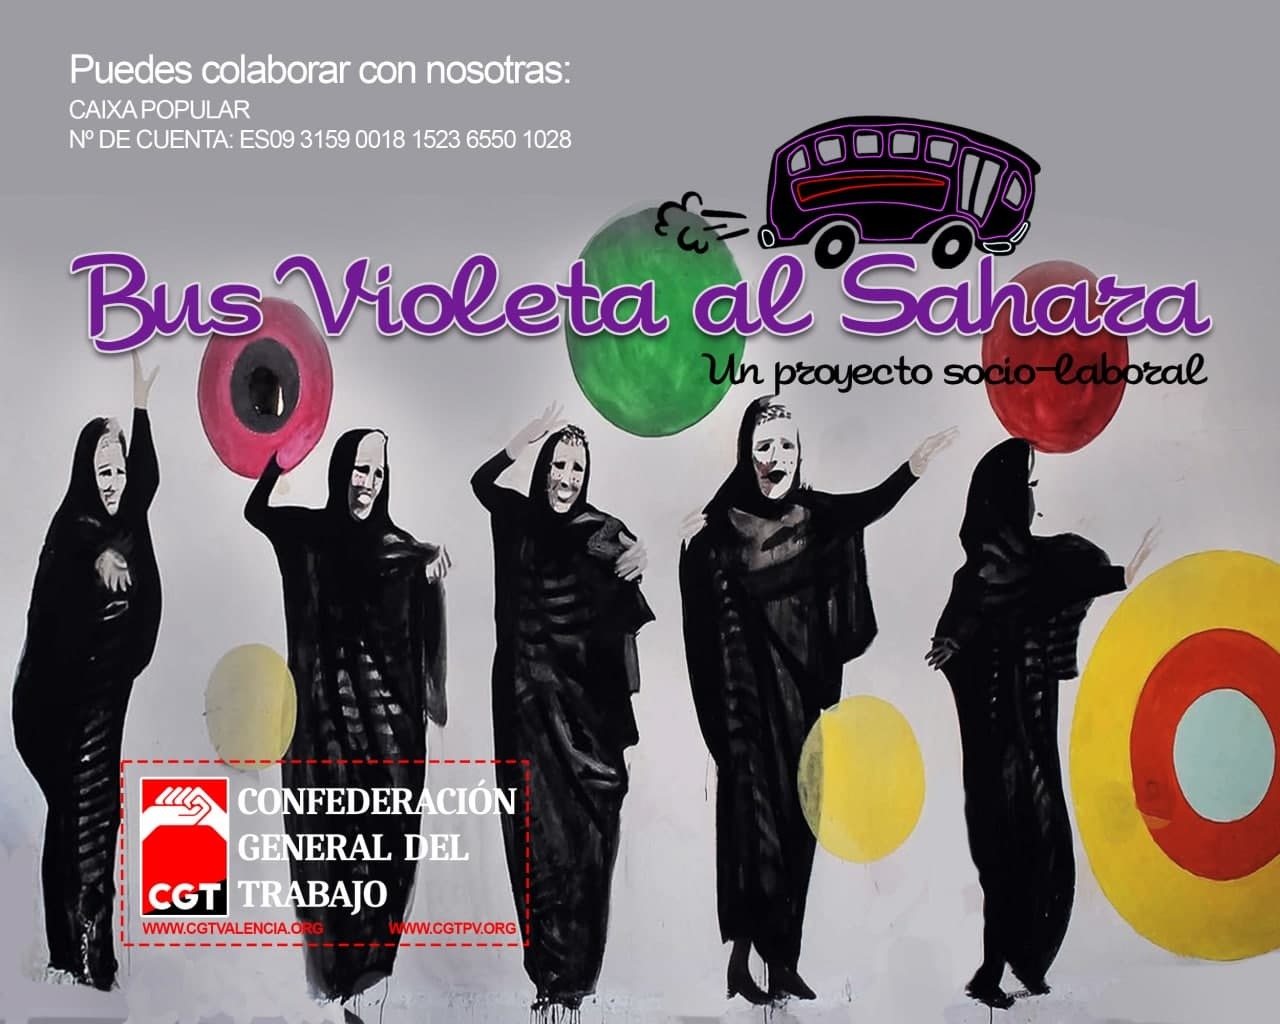 El bus violeta, el proyecto valenciano que empodera a las mujeres saharauis